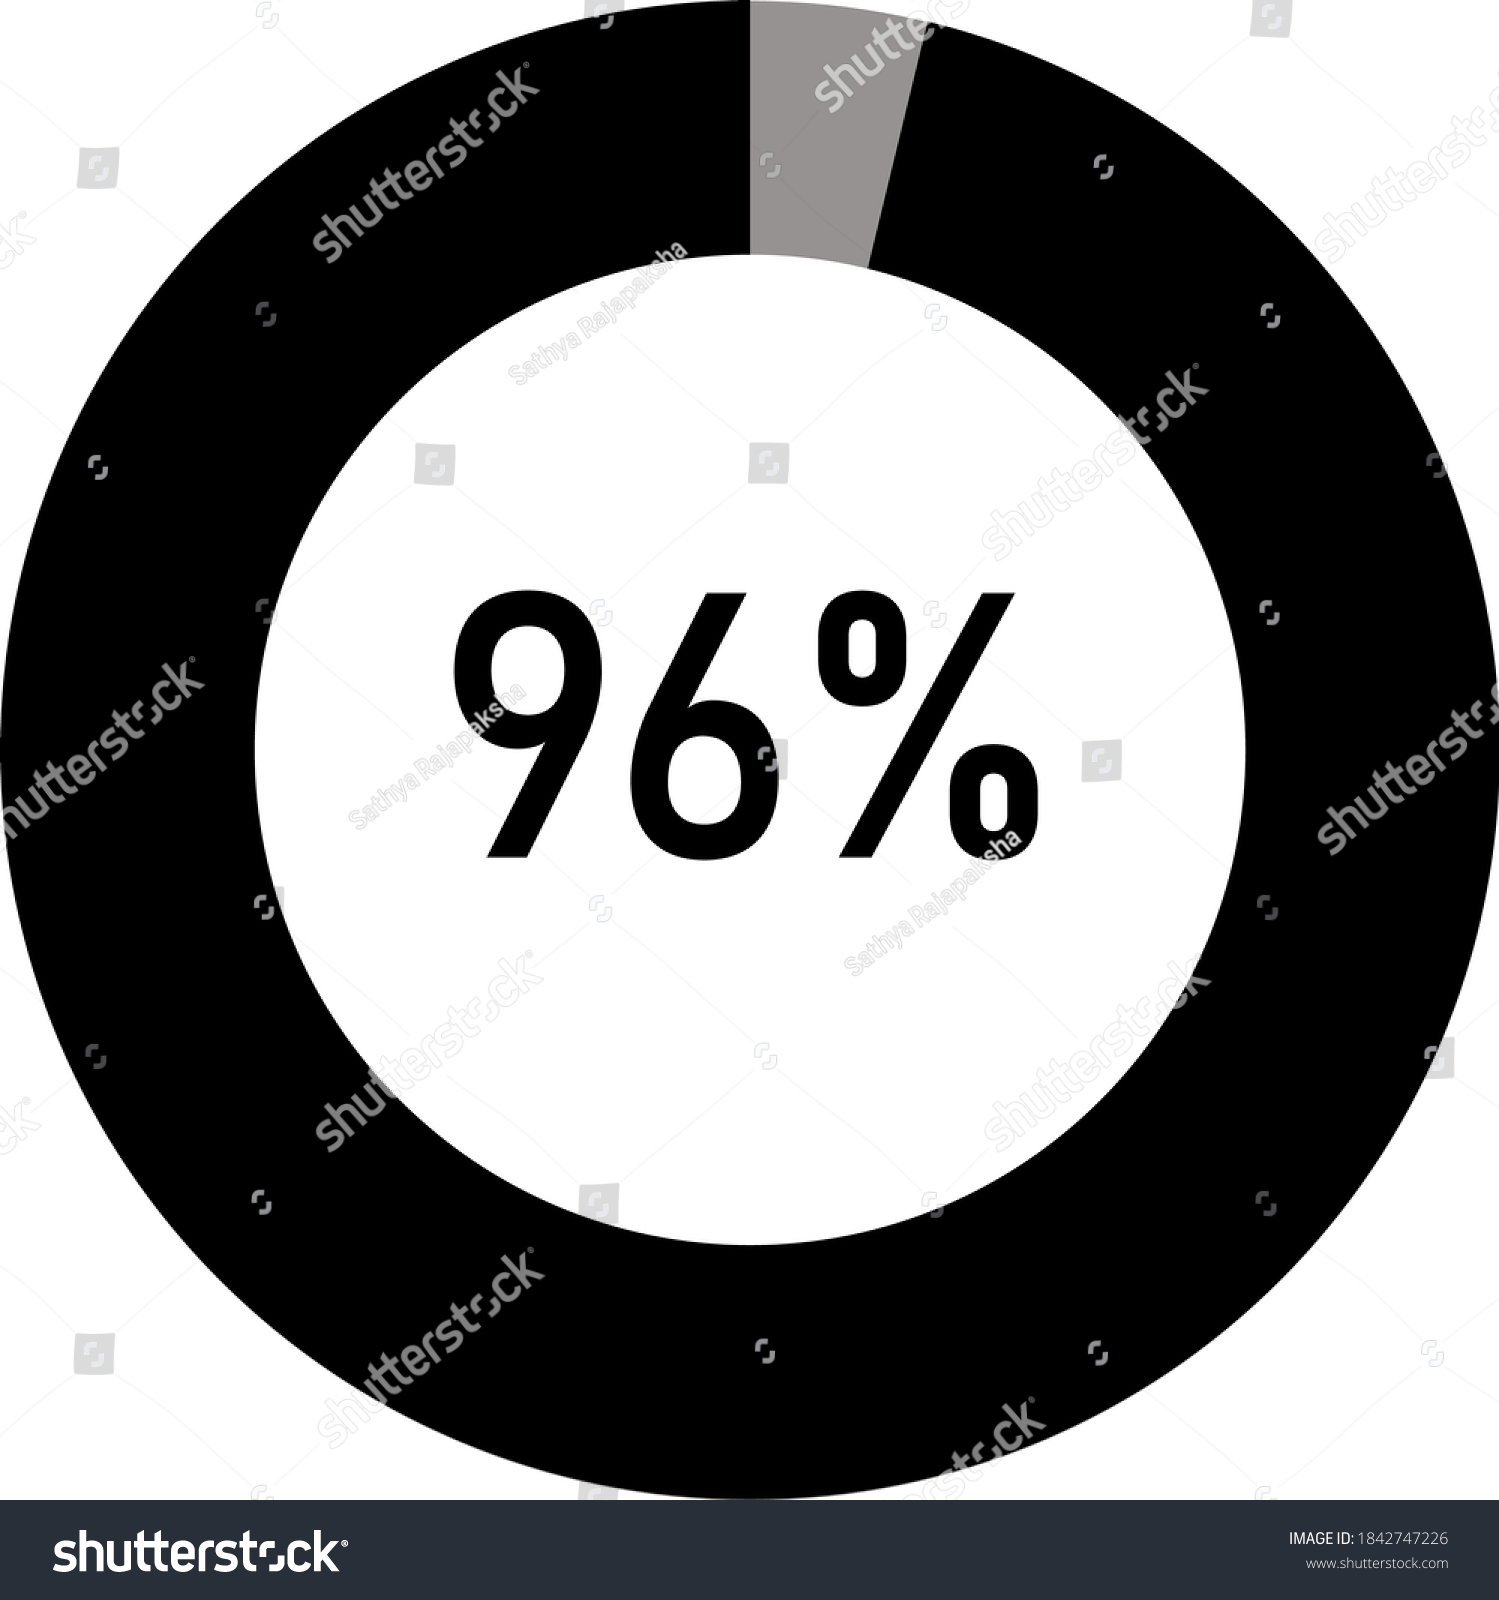 SVG of black and ash Percentage diagram for infographic, UI, web design. Progress bar template. Vector illustration.showing 96% svg